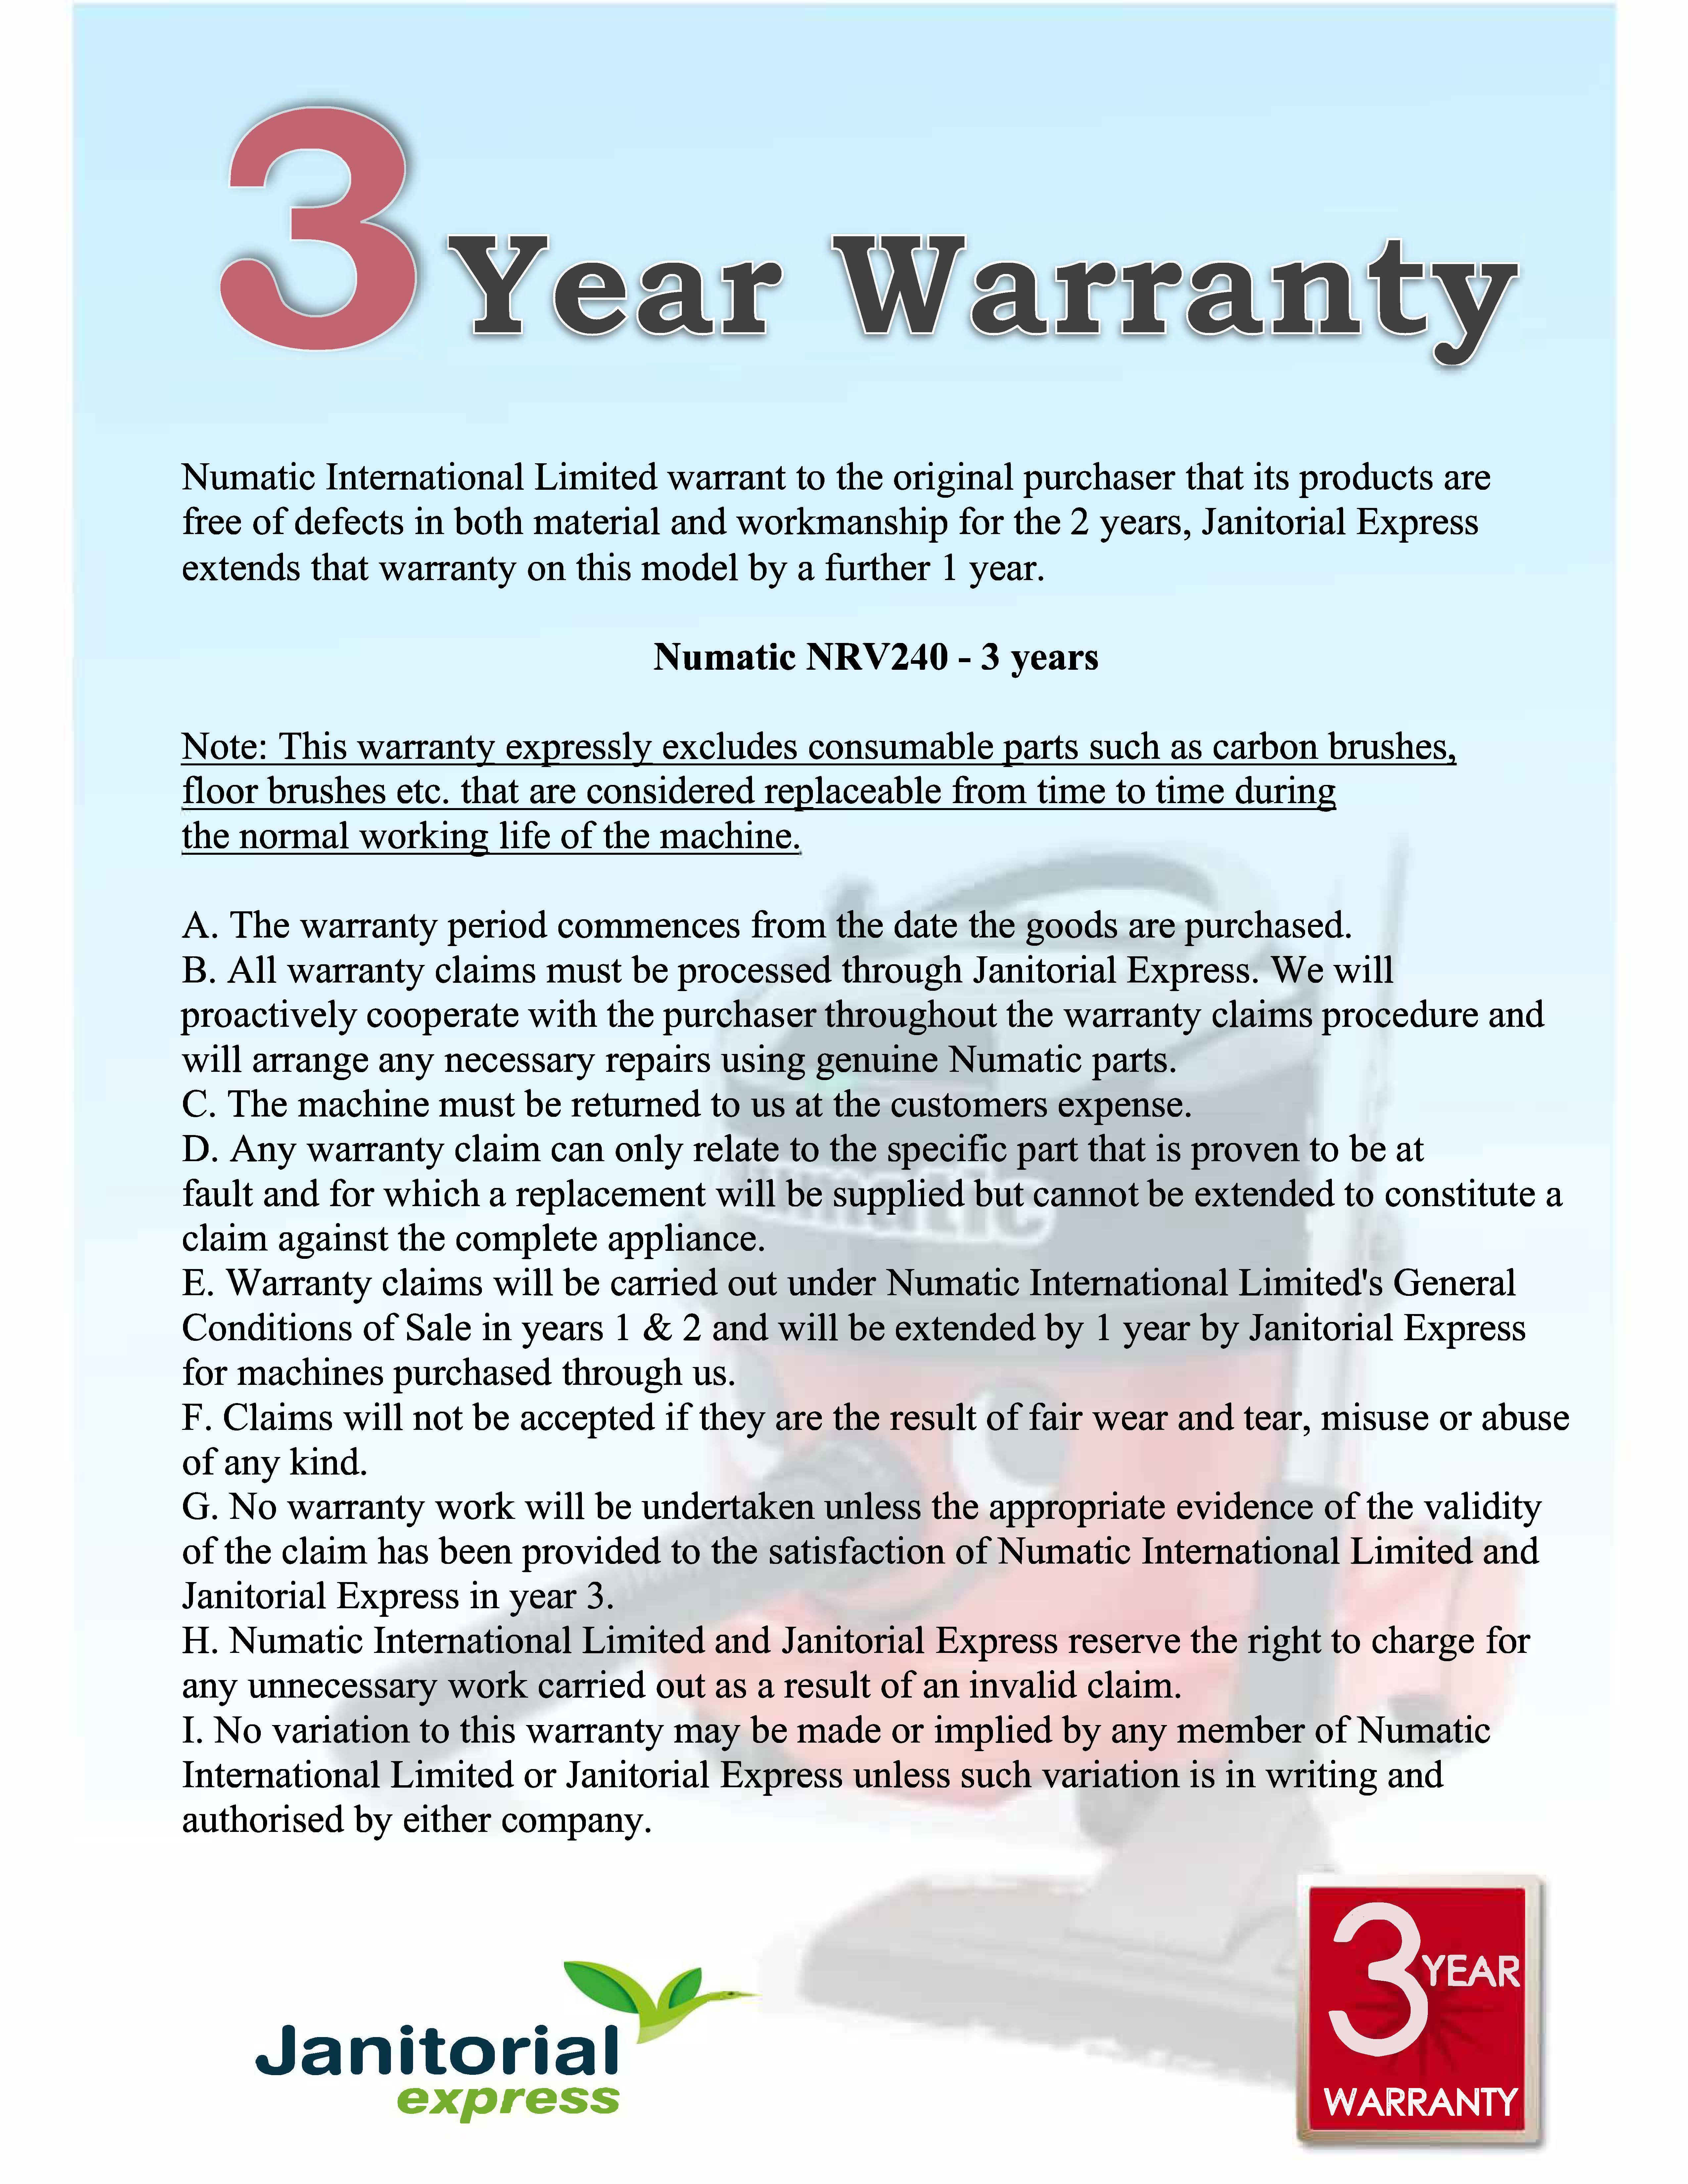 Numatic NVR240 3 year warranty JX.jpg (1.89 MB)